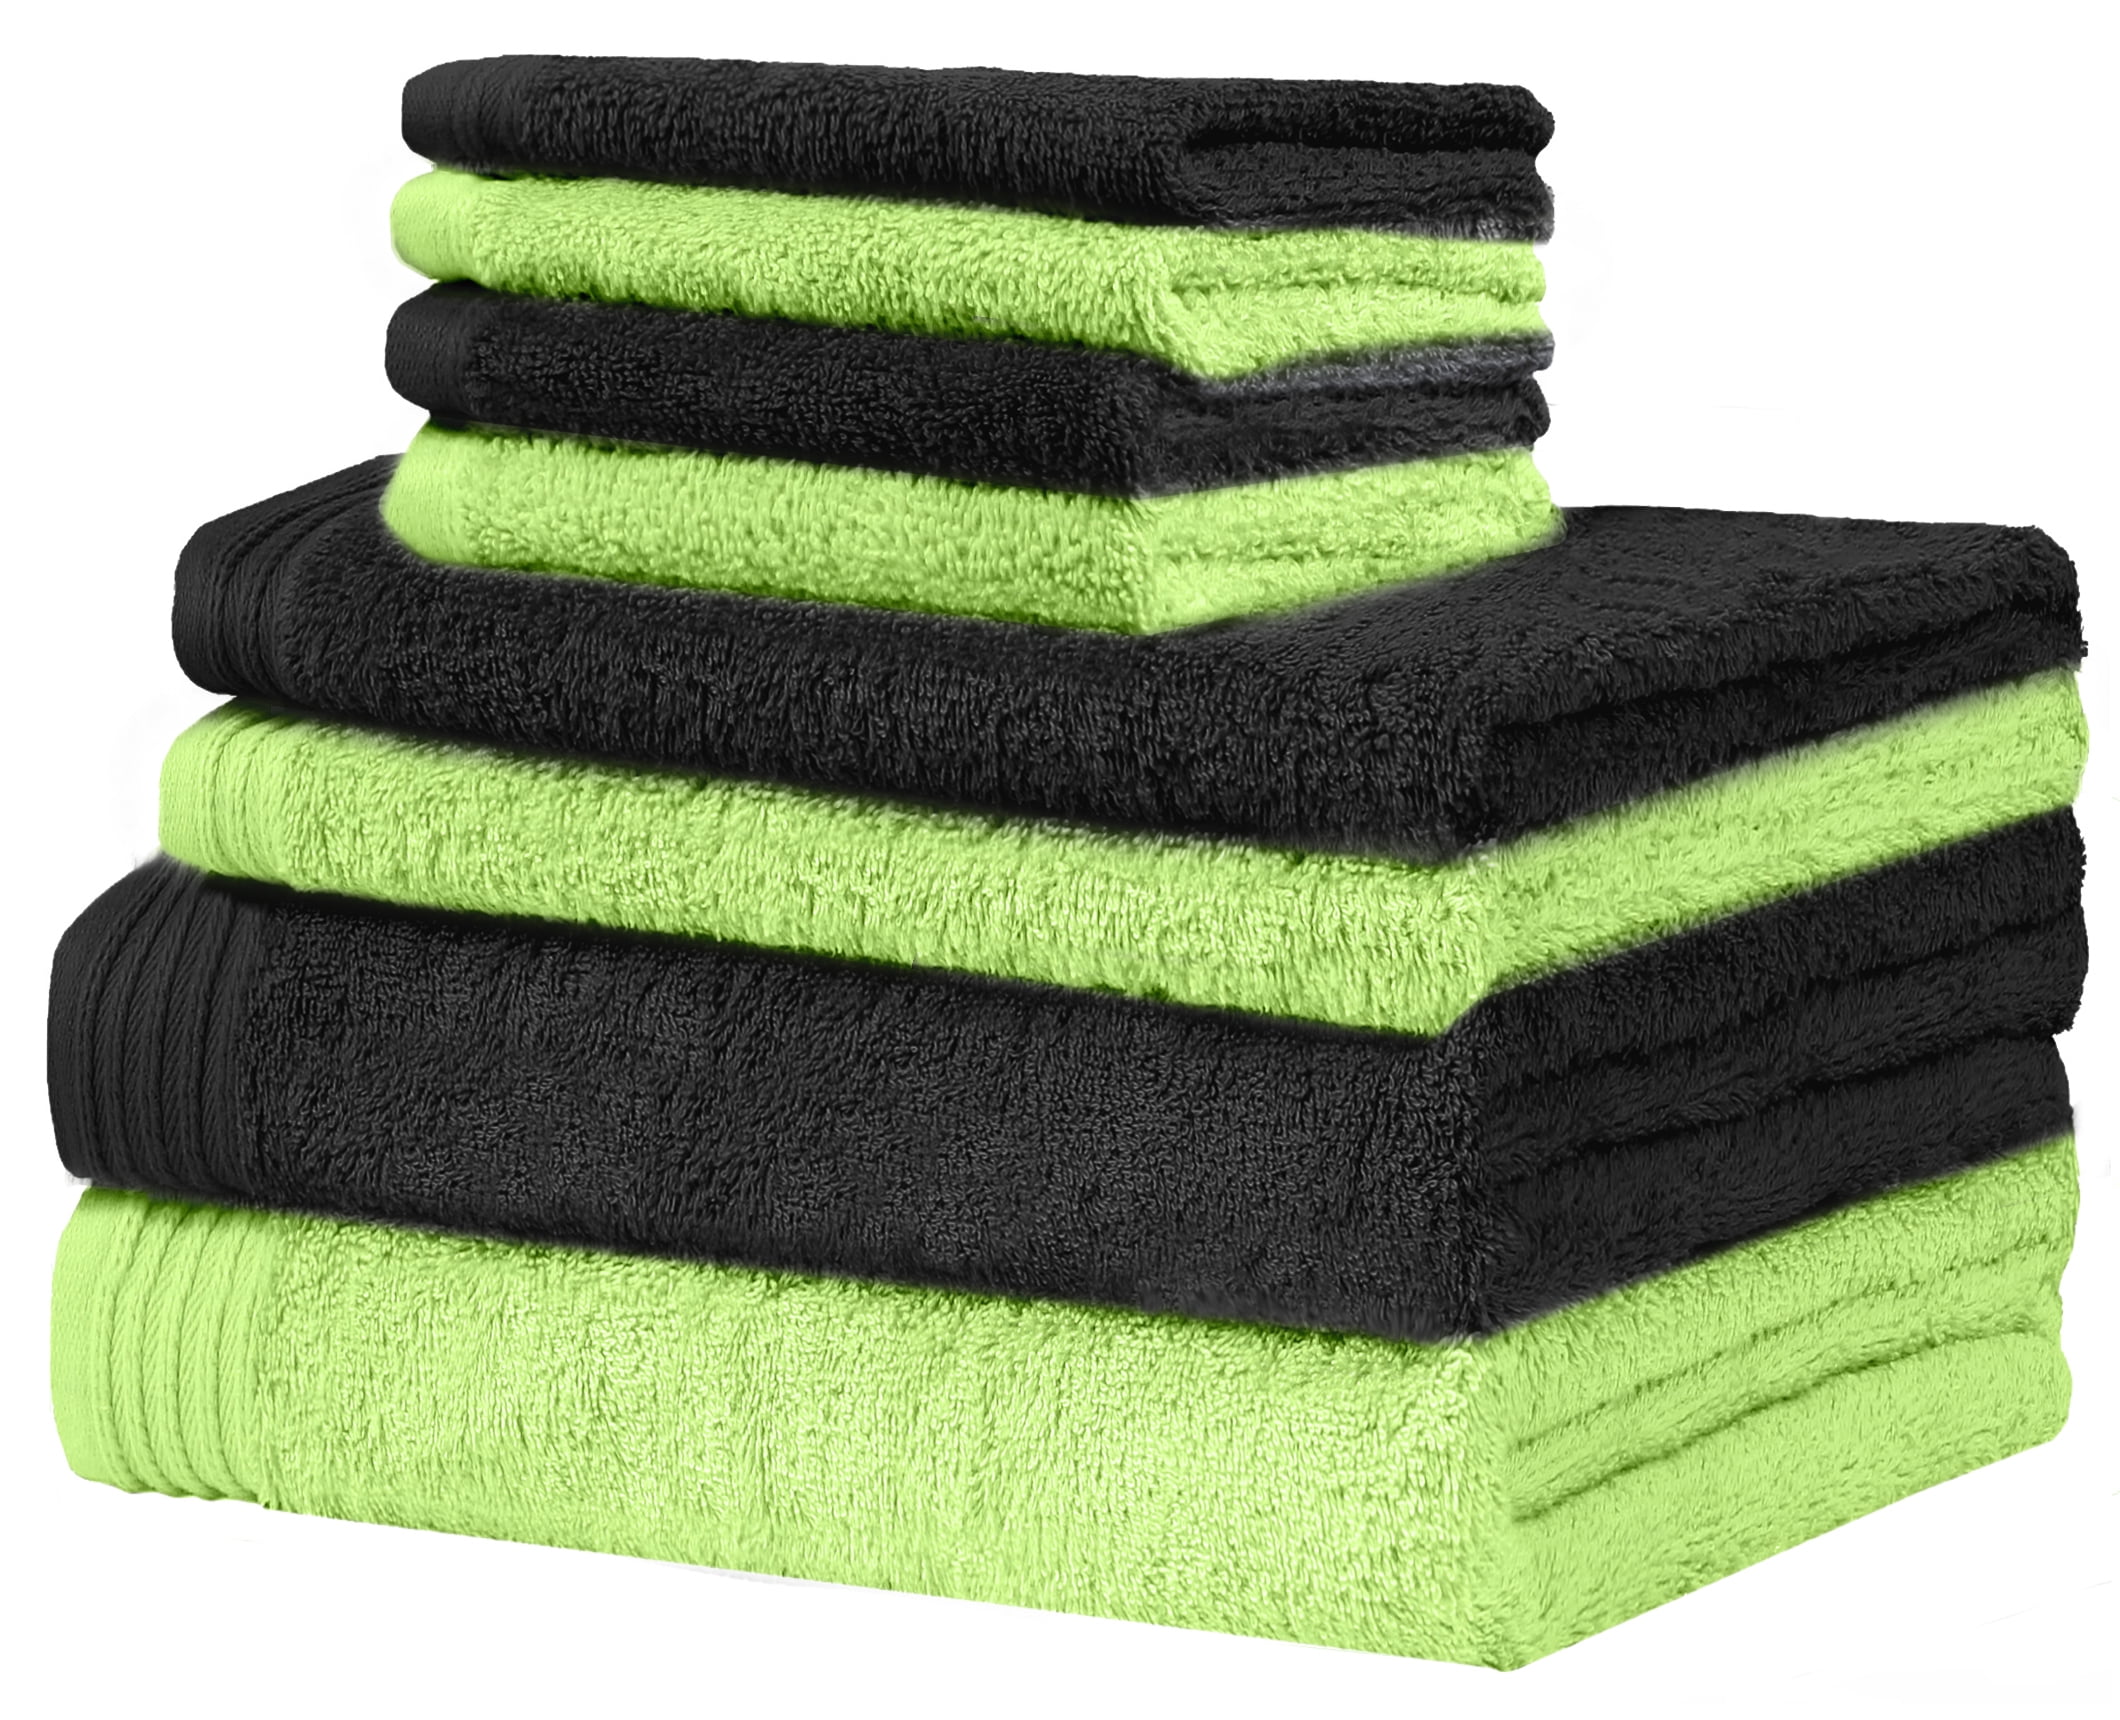 SPRINGFIELD LINEN Premium Bath Towel/ Bath Sheet Cotton 30" x 56",Set of 6 Color 